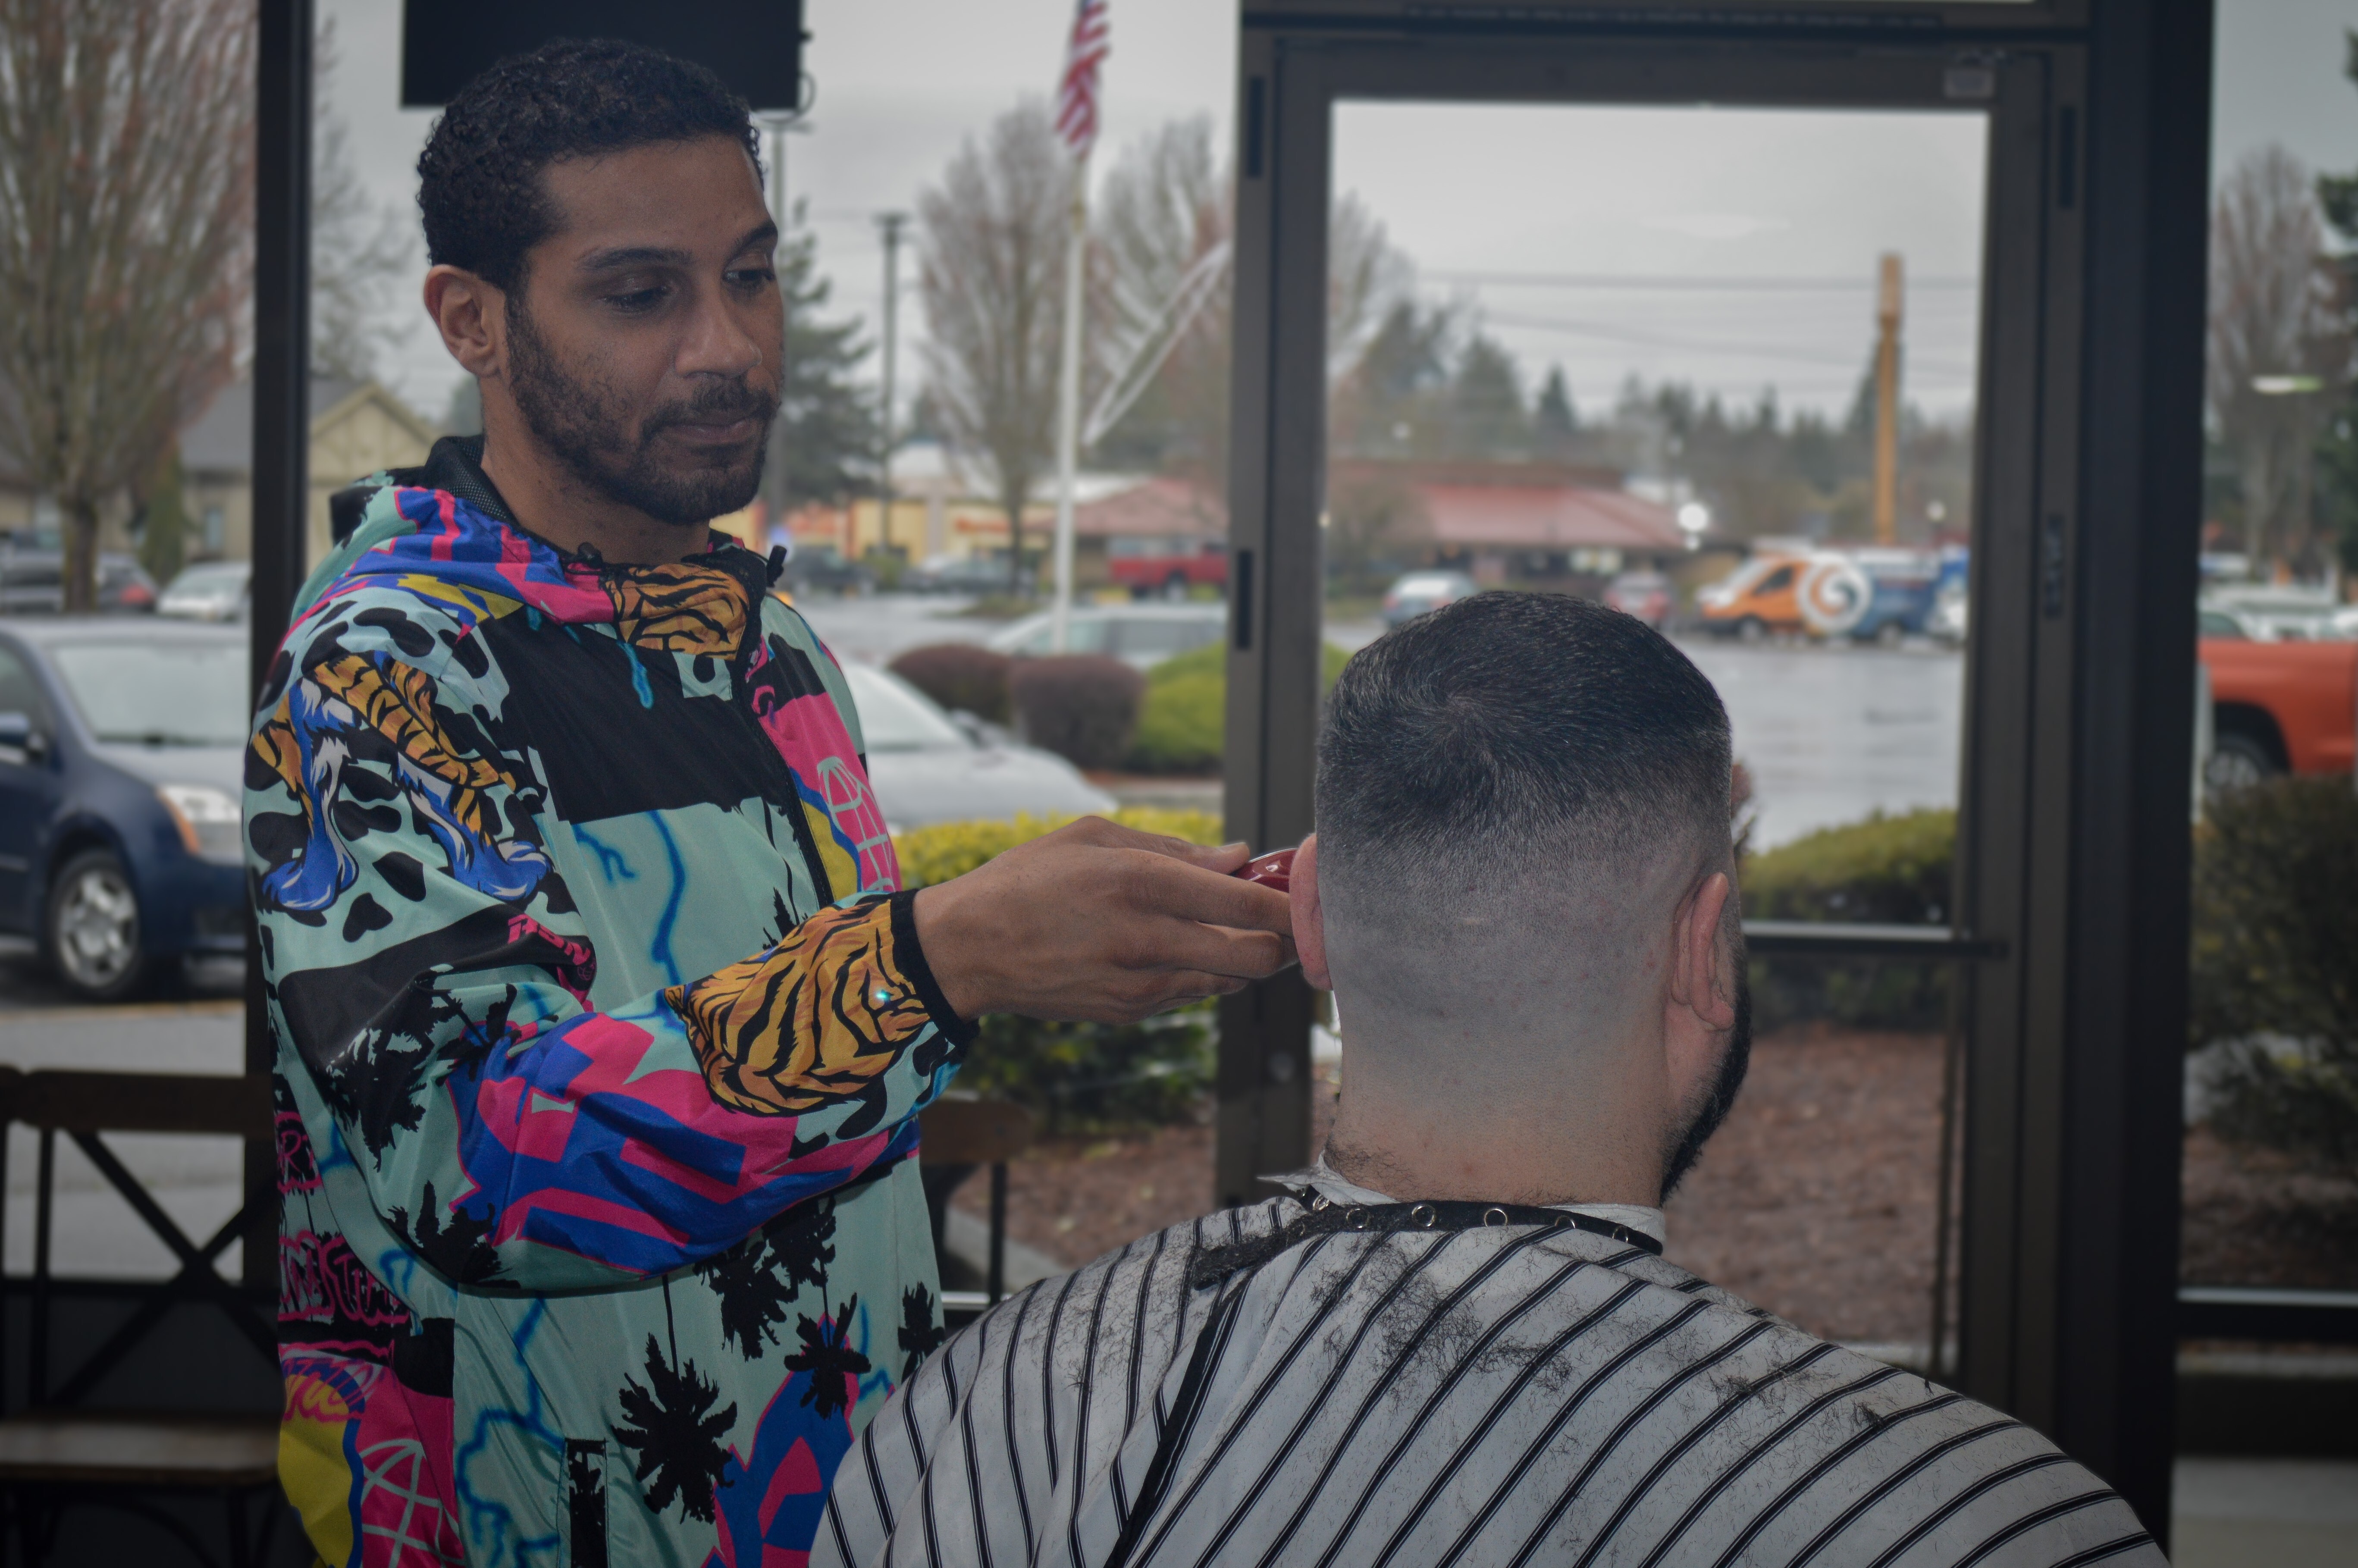 Barber#Portland Barber # PDX barber#Antique Barbershop #edge#fade#line up#Shave#black hair#Portland Barbershop# PDX barbershop#designe